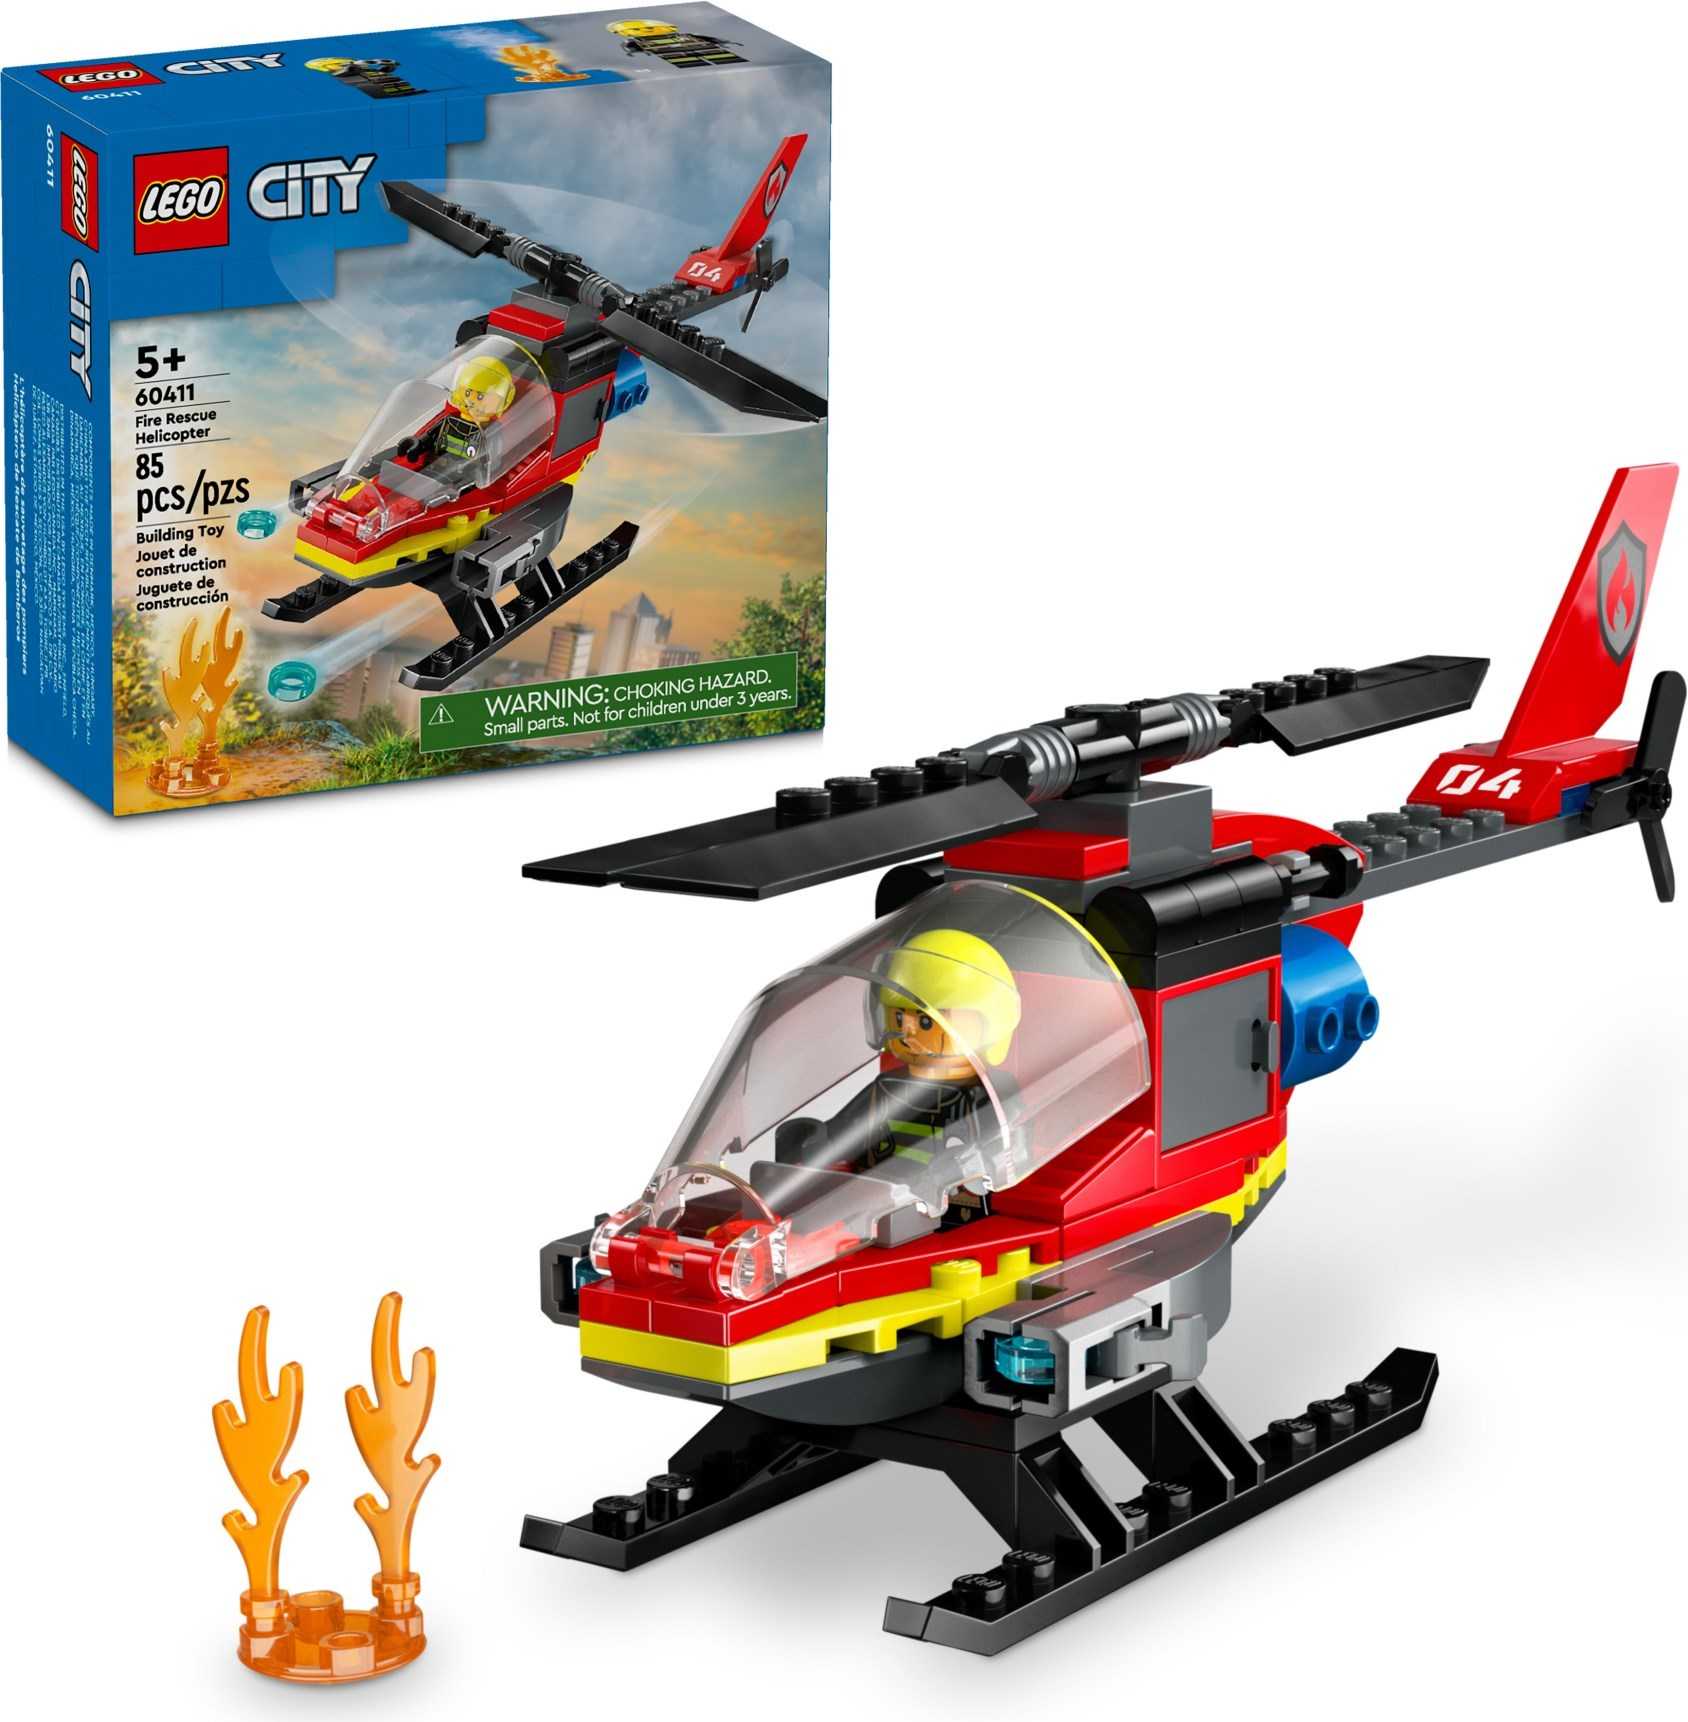 電積系 樂高 LEGO 60411 消防救援直升機 City